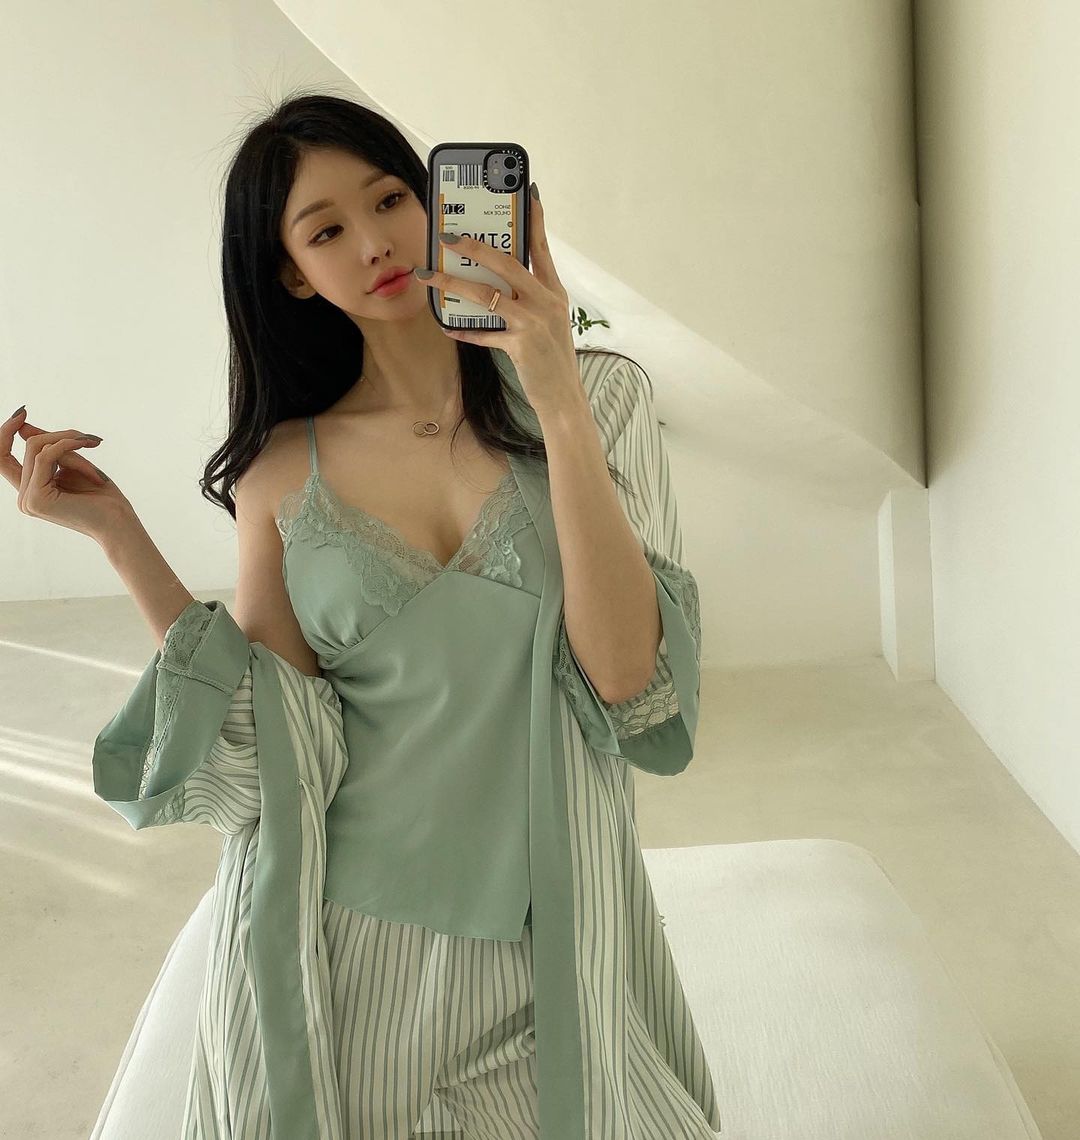 Model Kim Sihoo.